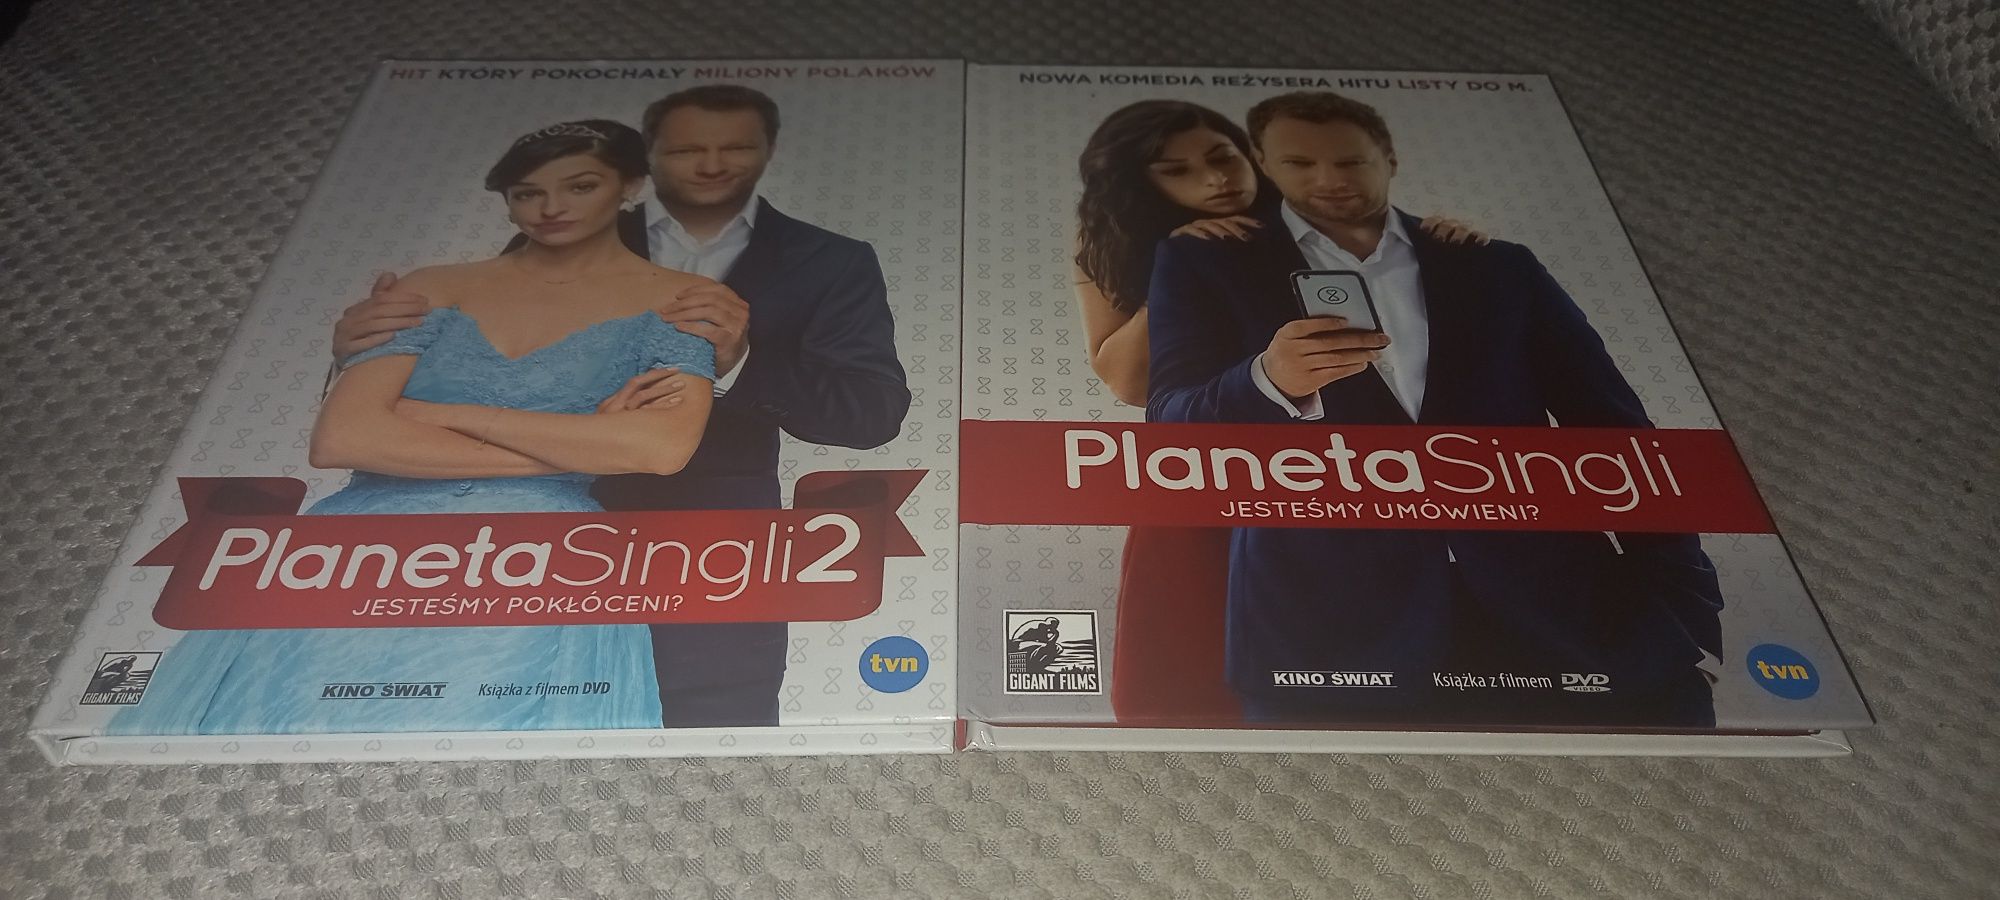 Planeta singli 1 i 2 dvd